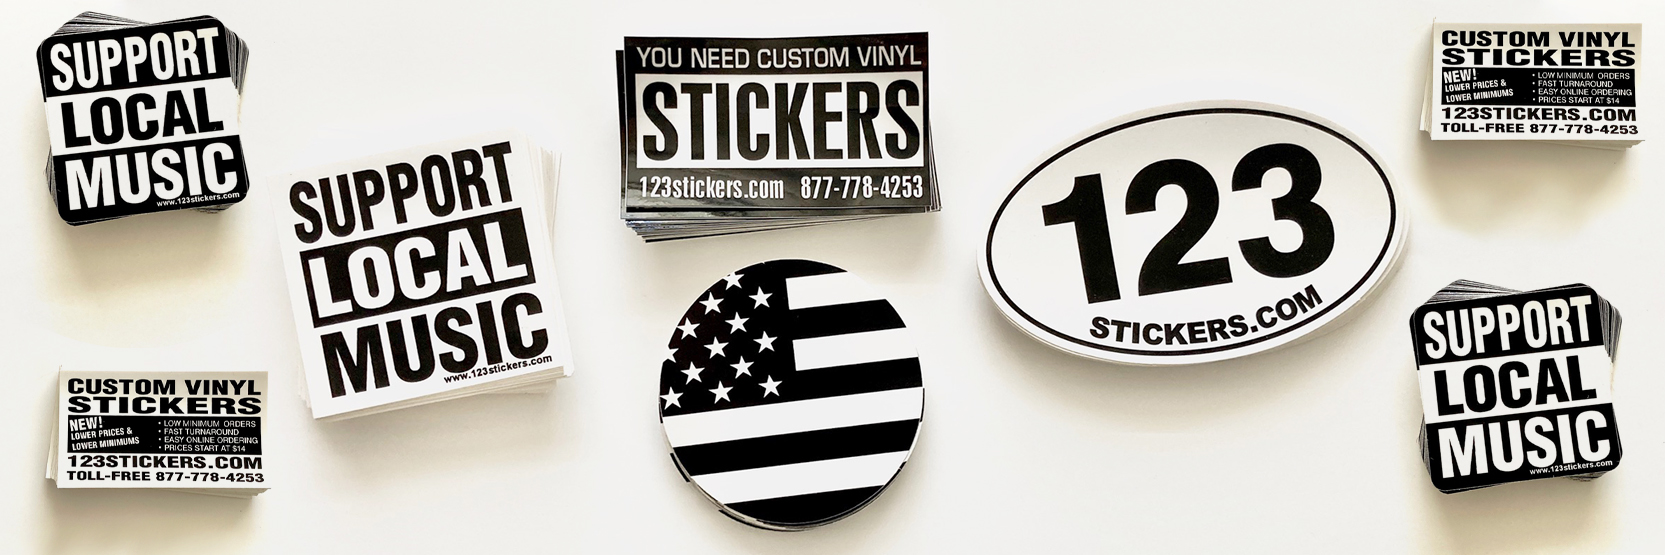 Vinyl Stickers